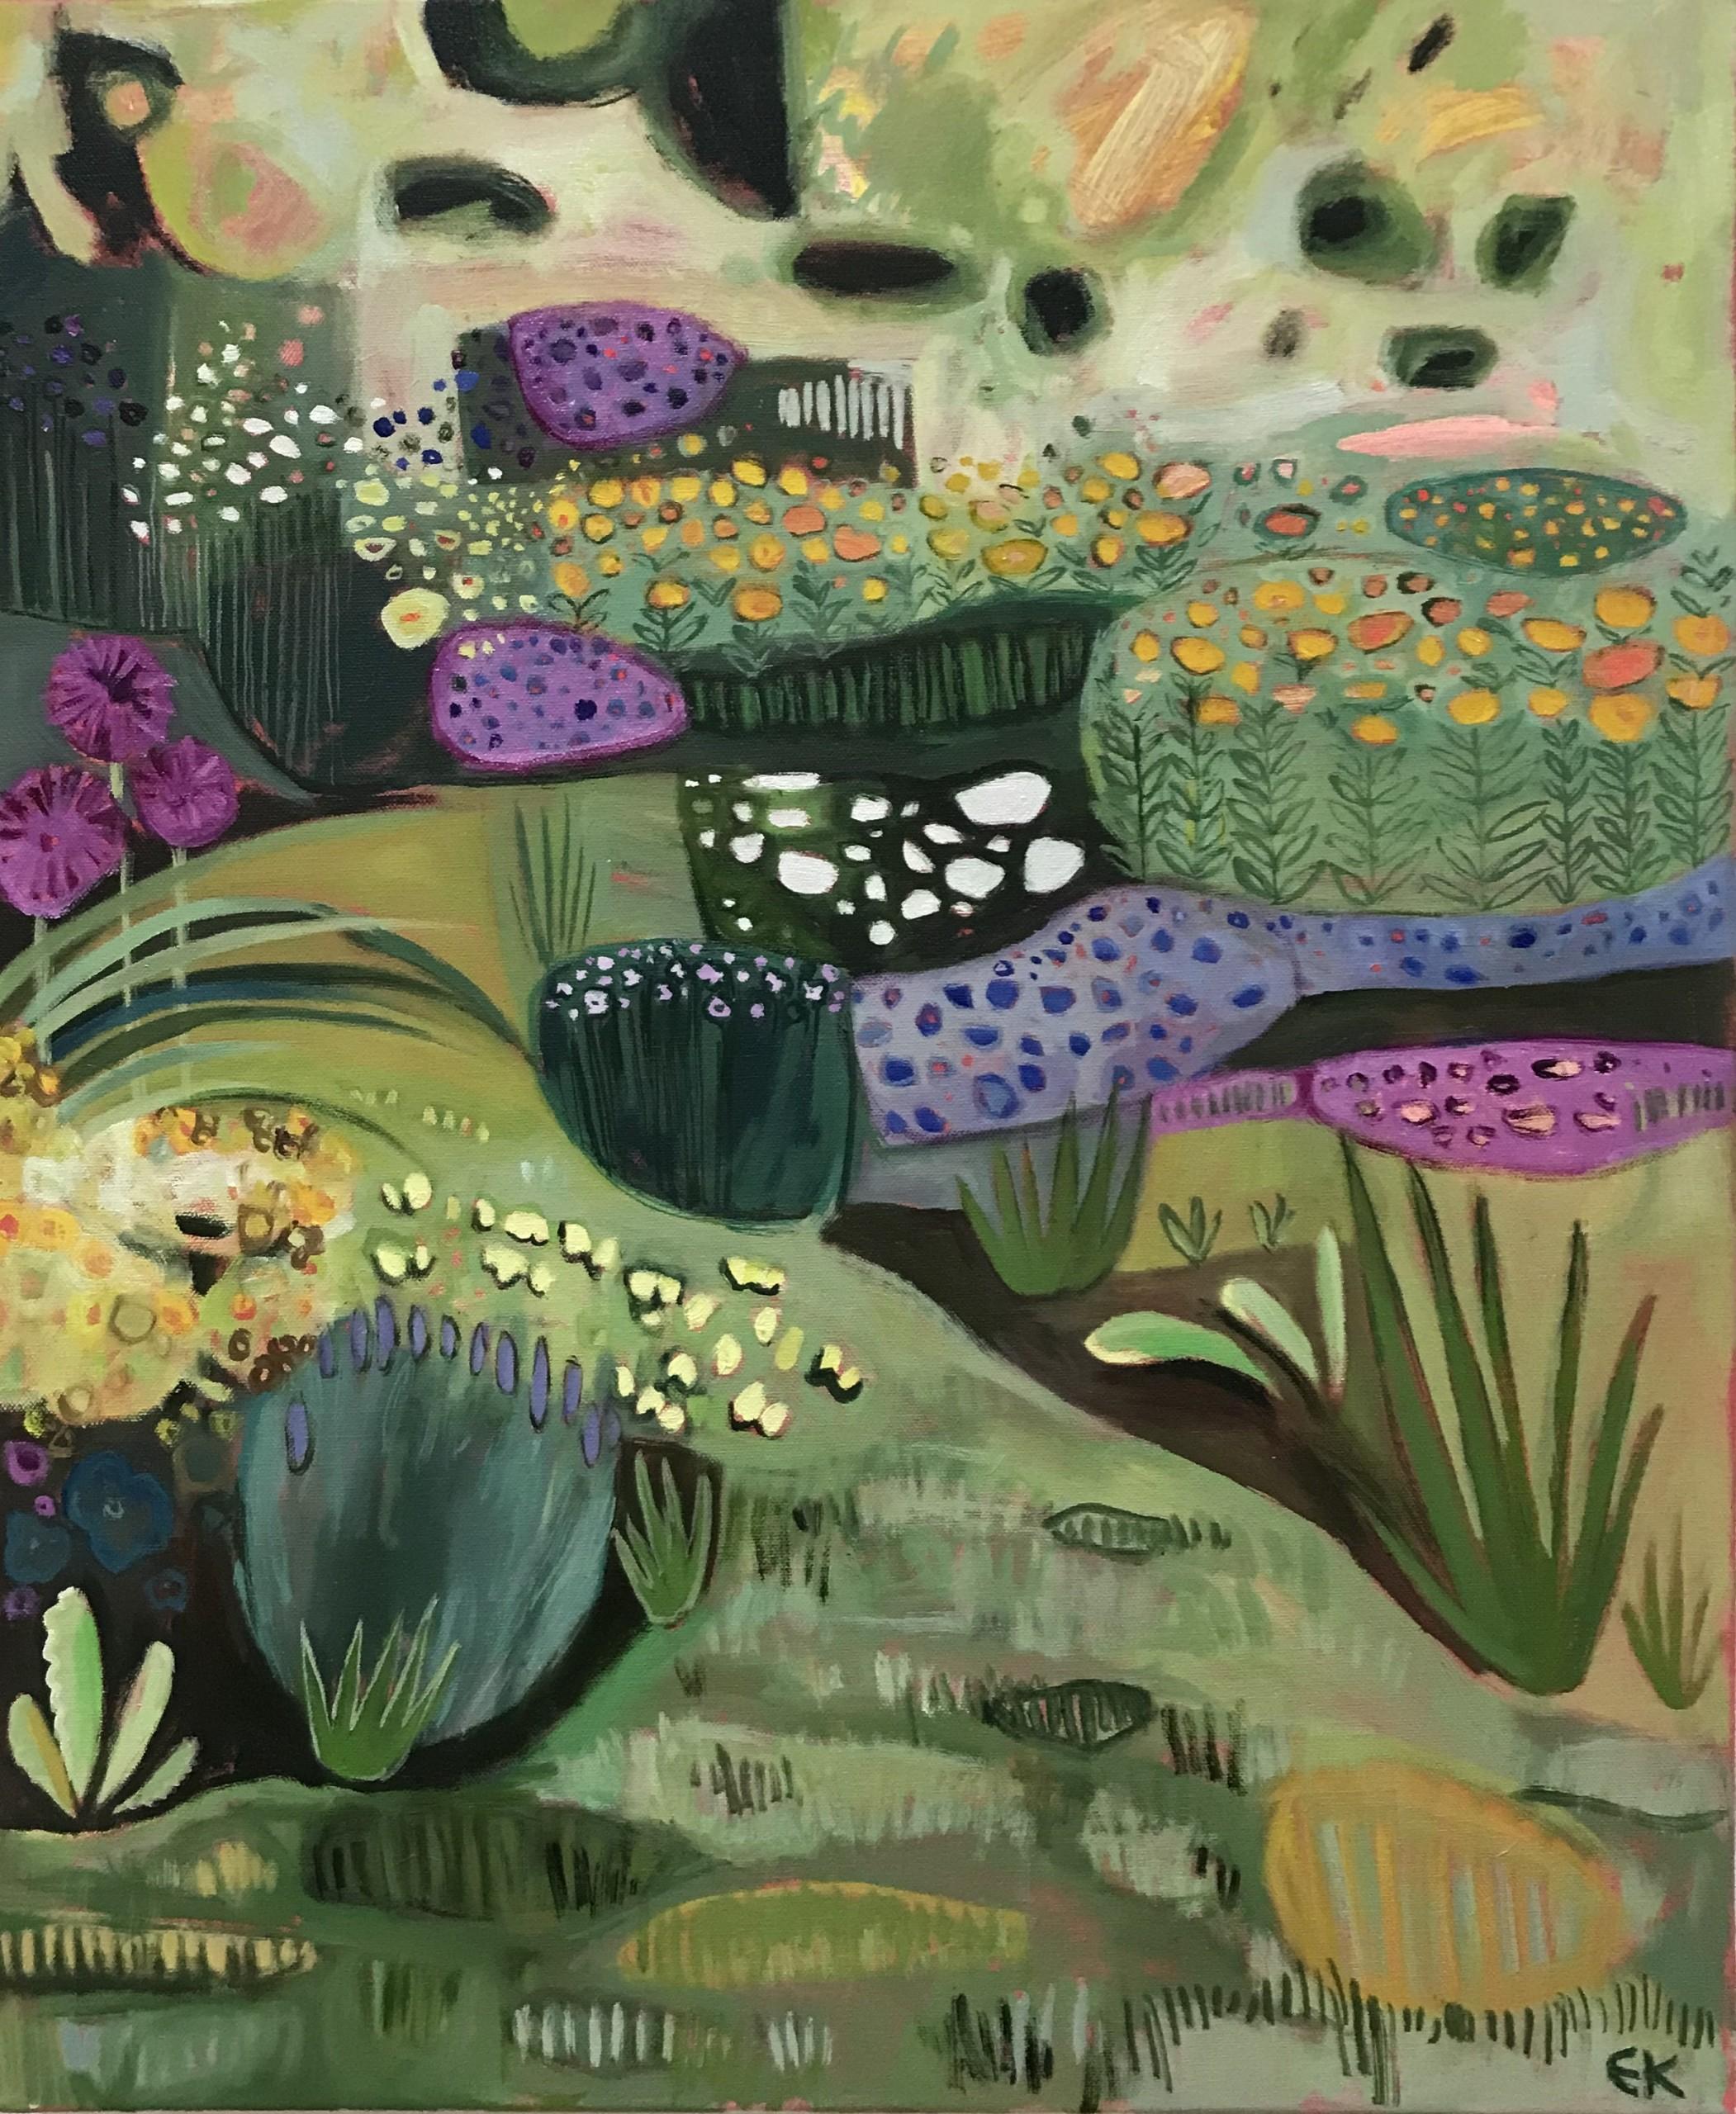 Delphiniums II by Elaine Kazimierczuk, Nature, Landscape, Floral, Original  6